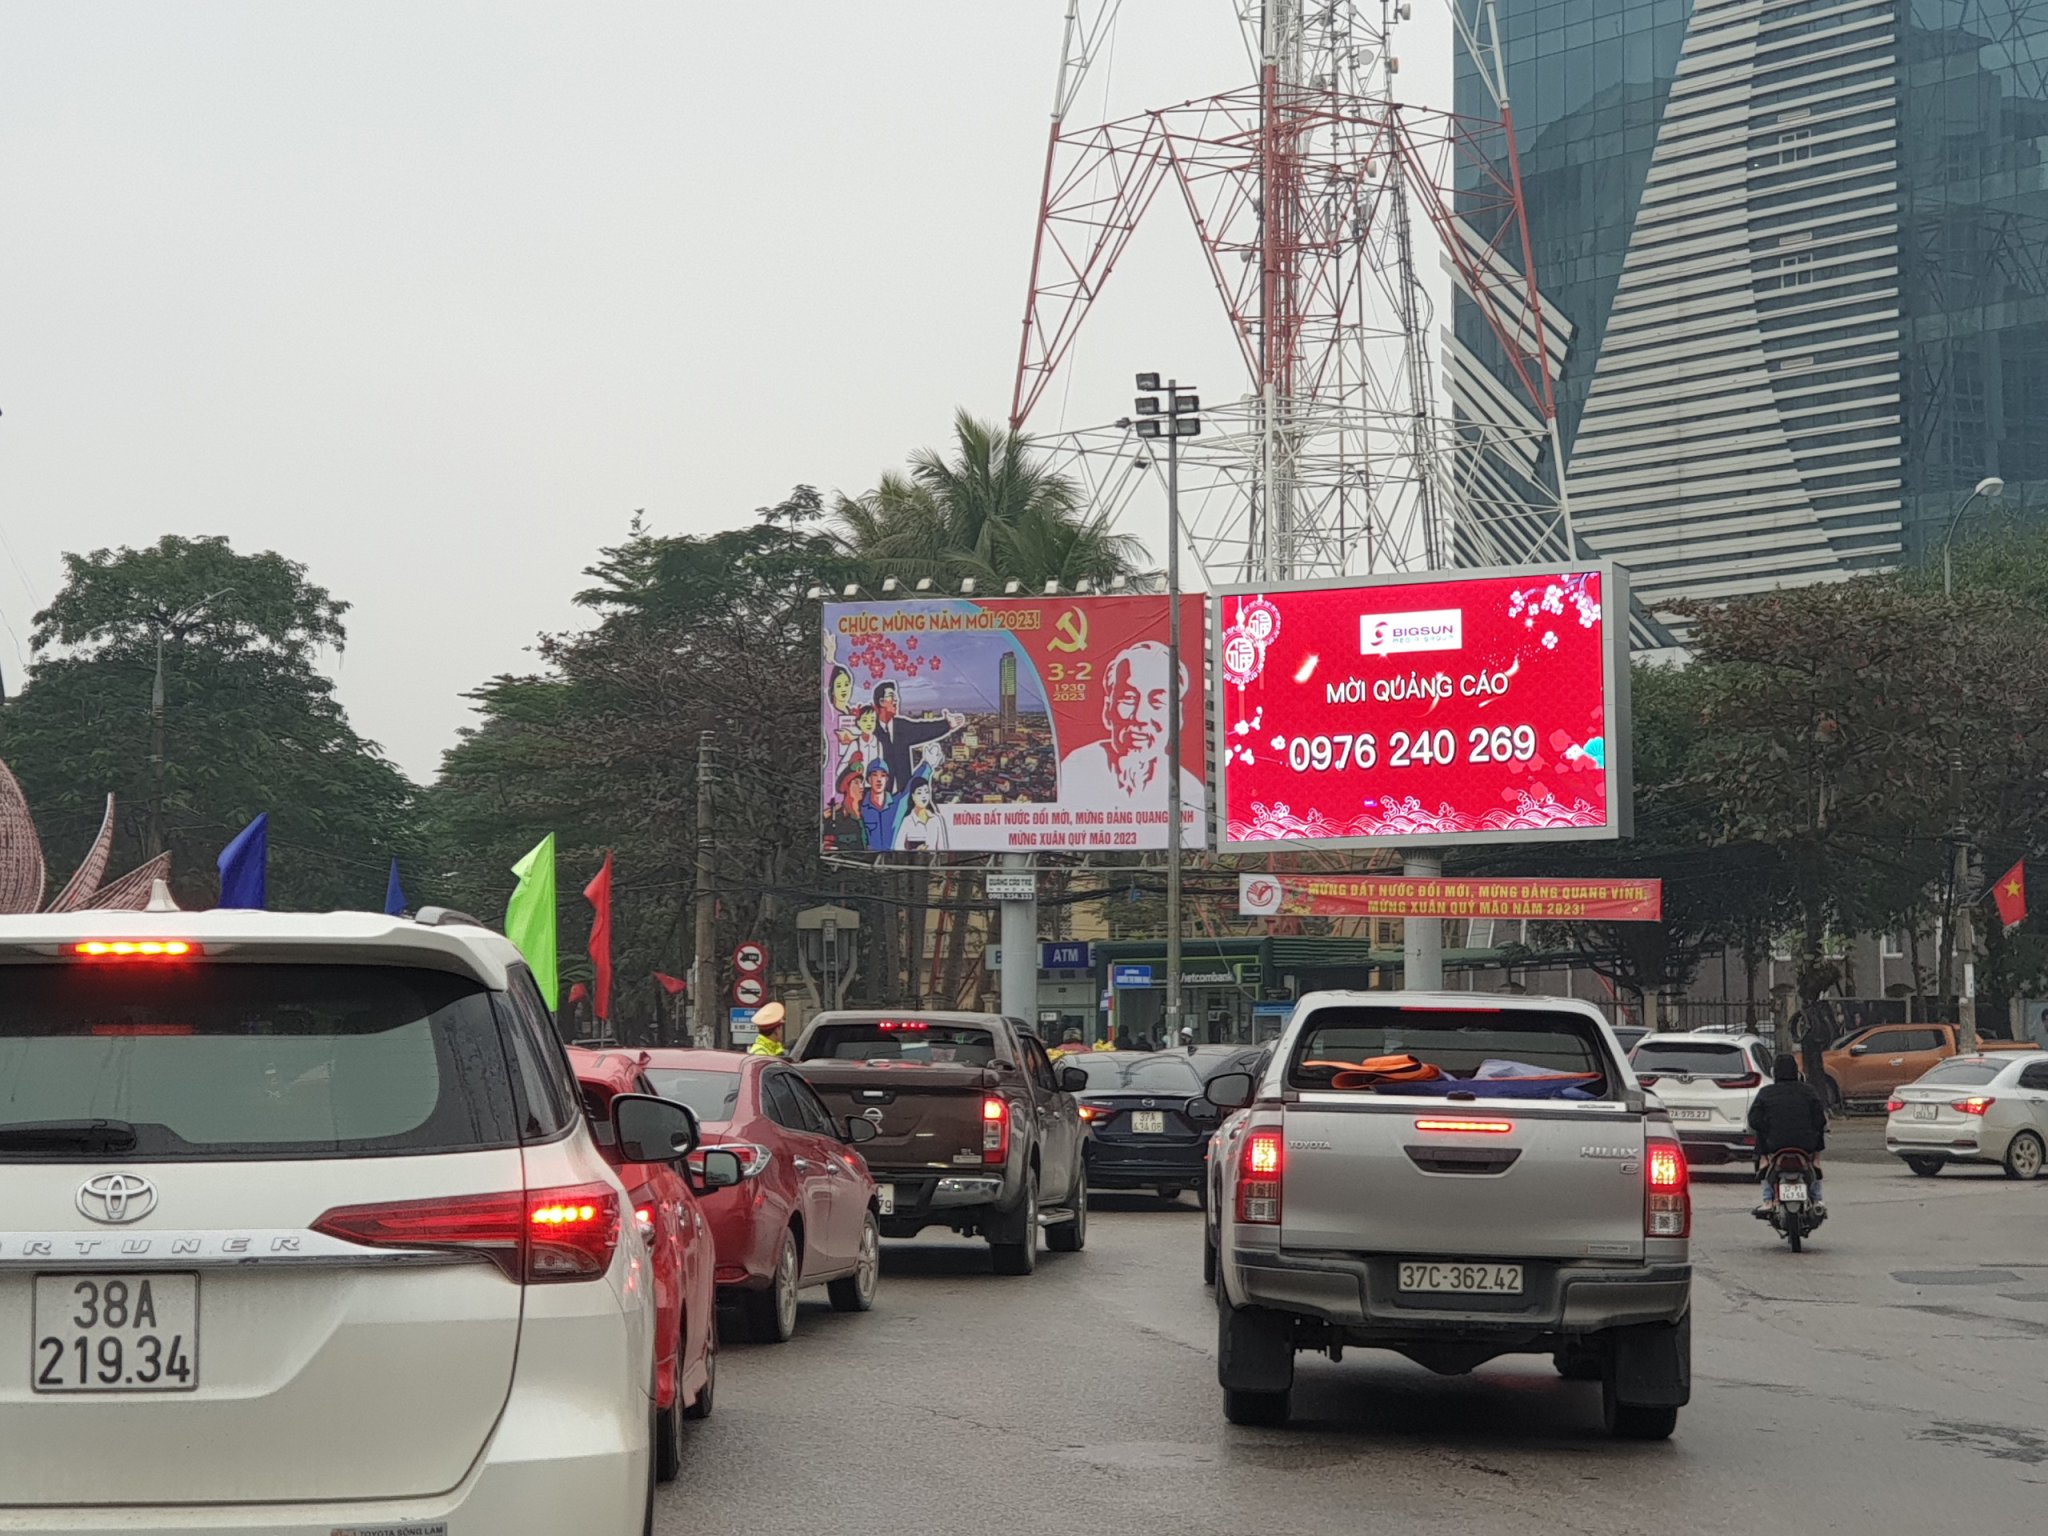 Quảng cáo màn hình led vòng xoay Đài truyền hình, Bưu điện Nghệ An